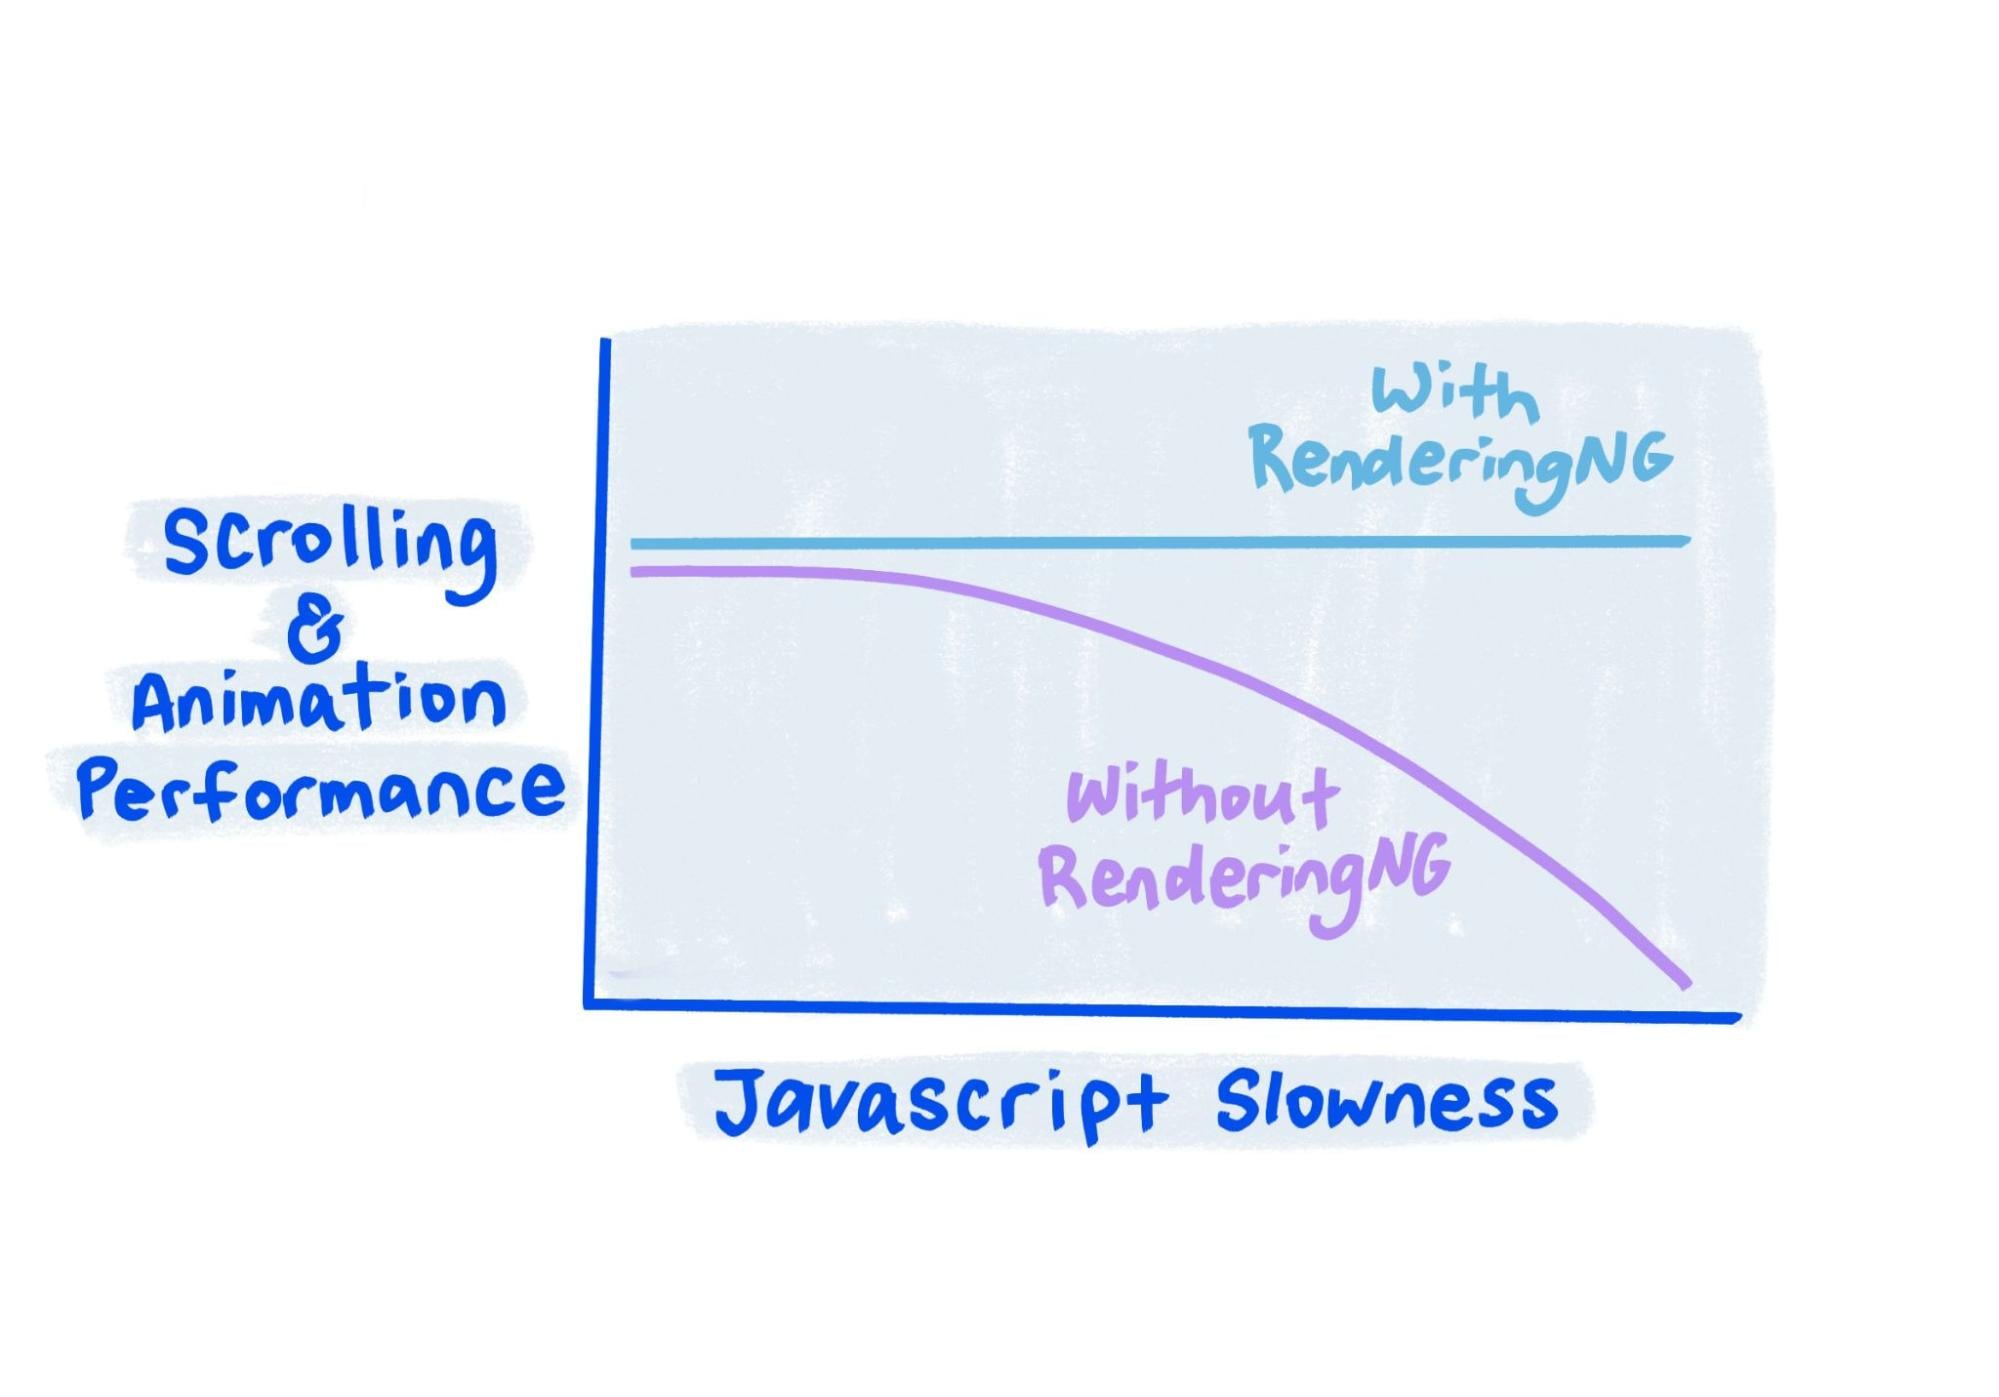 Lo schizzo mostra che con RenderingNG le prestazioni rimangono solide anche quando JavaScript è molto lento.